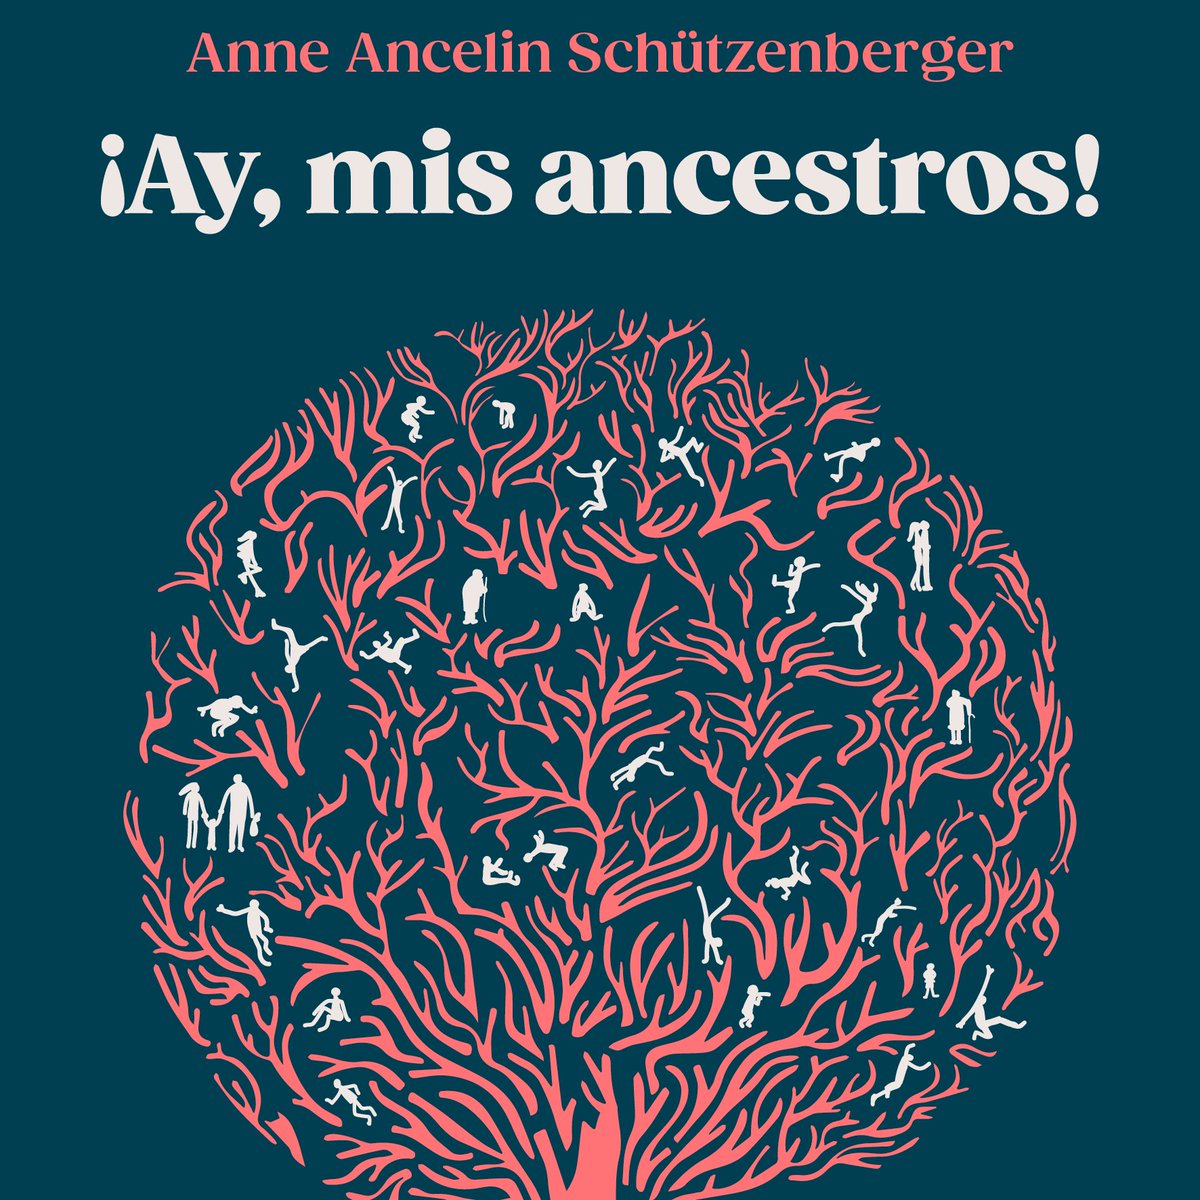 ¡Jueves de #novedades! Y hoy llega a librerías «¡Ay, mis ancestros!», de Anne Ancelin Schützenberger. Un libro sobre la influencia de los antepasados en nuestra vida, los secretos de familia y la transmisión inconsciente de eventos traumáticos. Más 👉 bit.ly/4cUqDQM